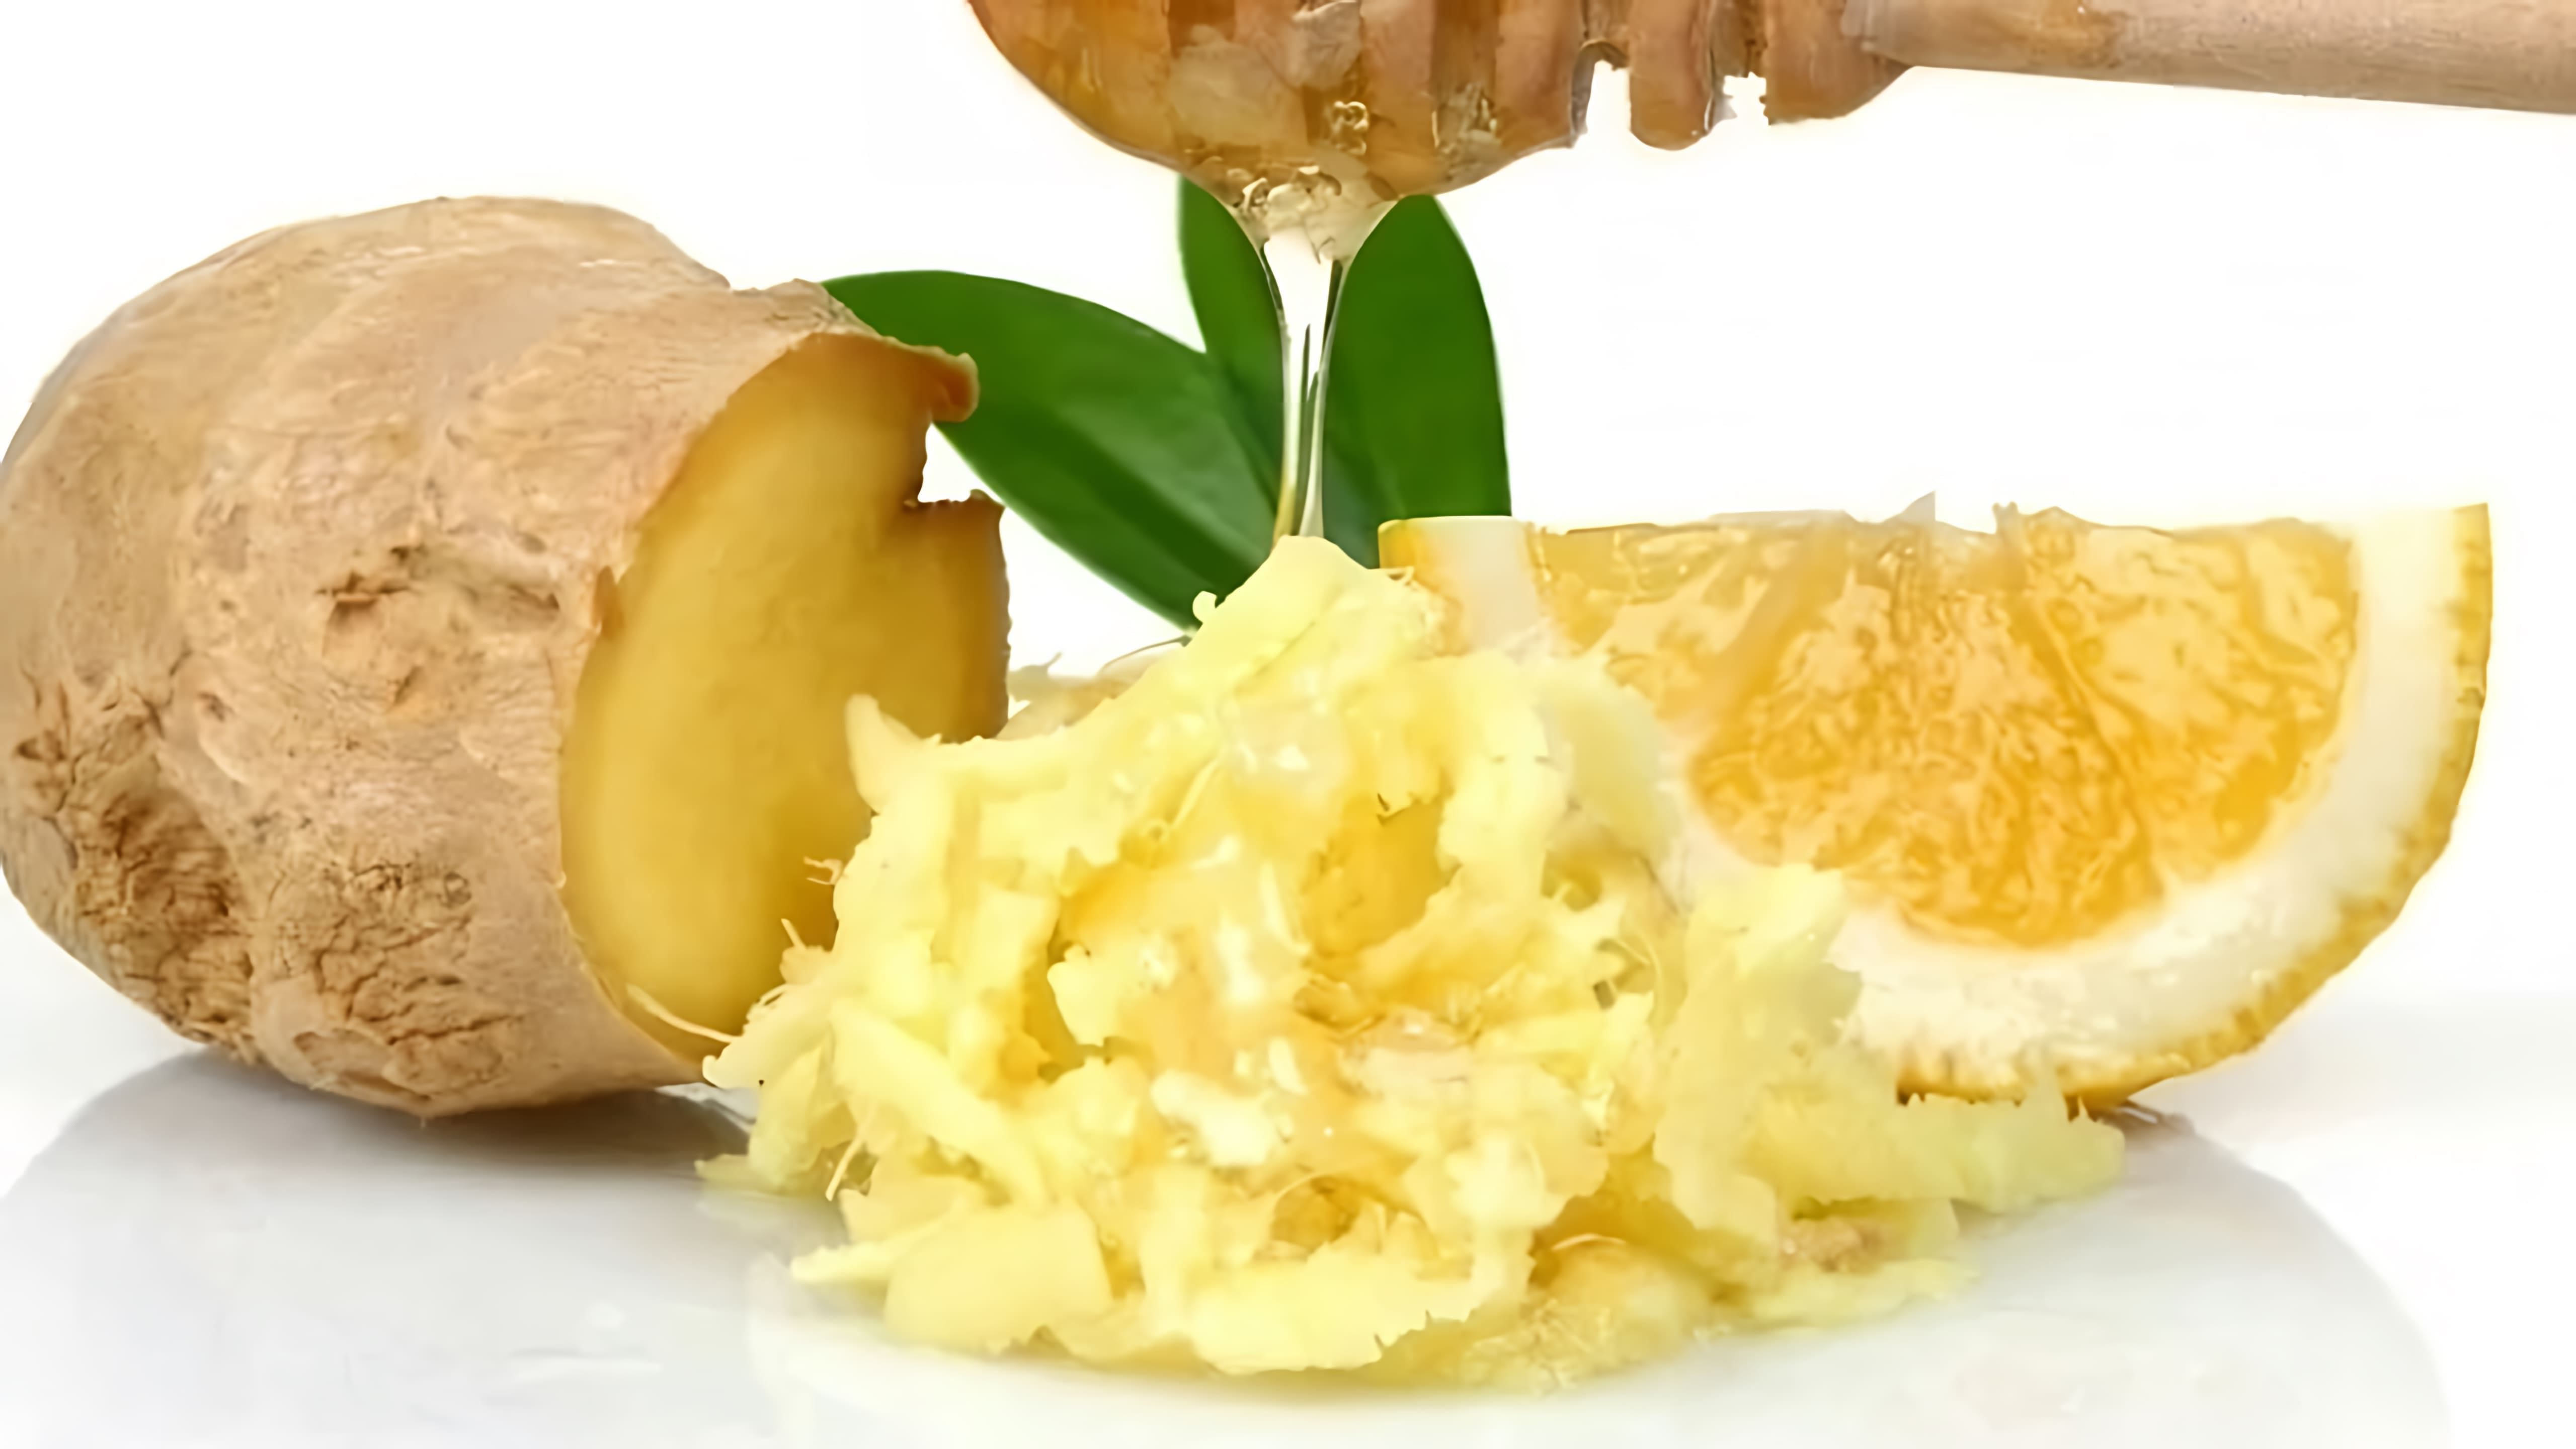 В этом видео рассказывается о приготовлении народного лечебного средства из корня имбиря, лимона и меда